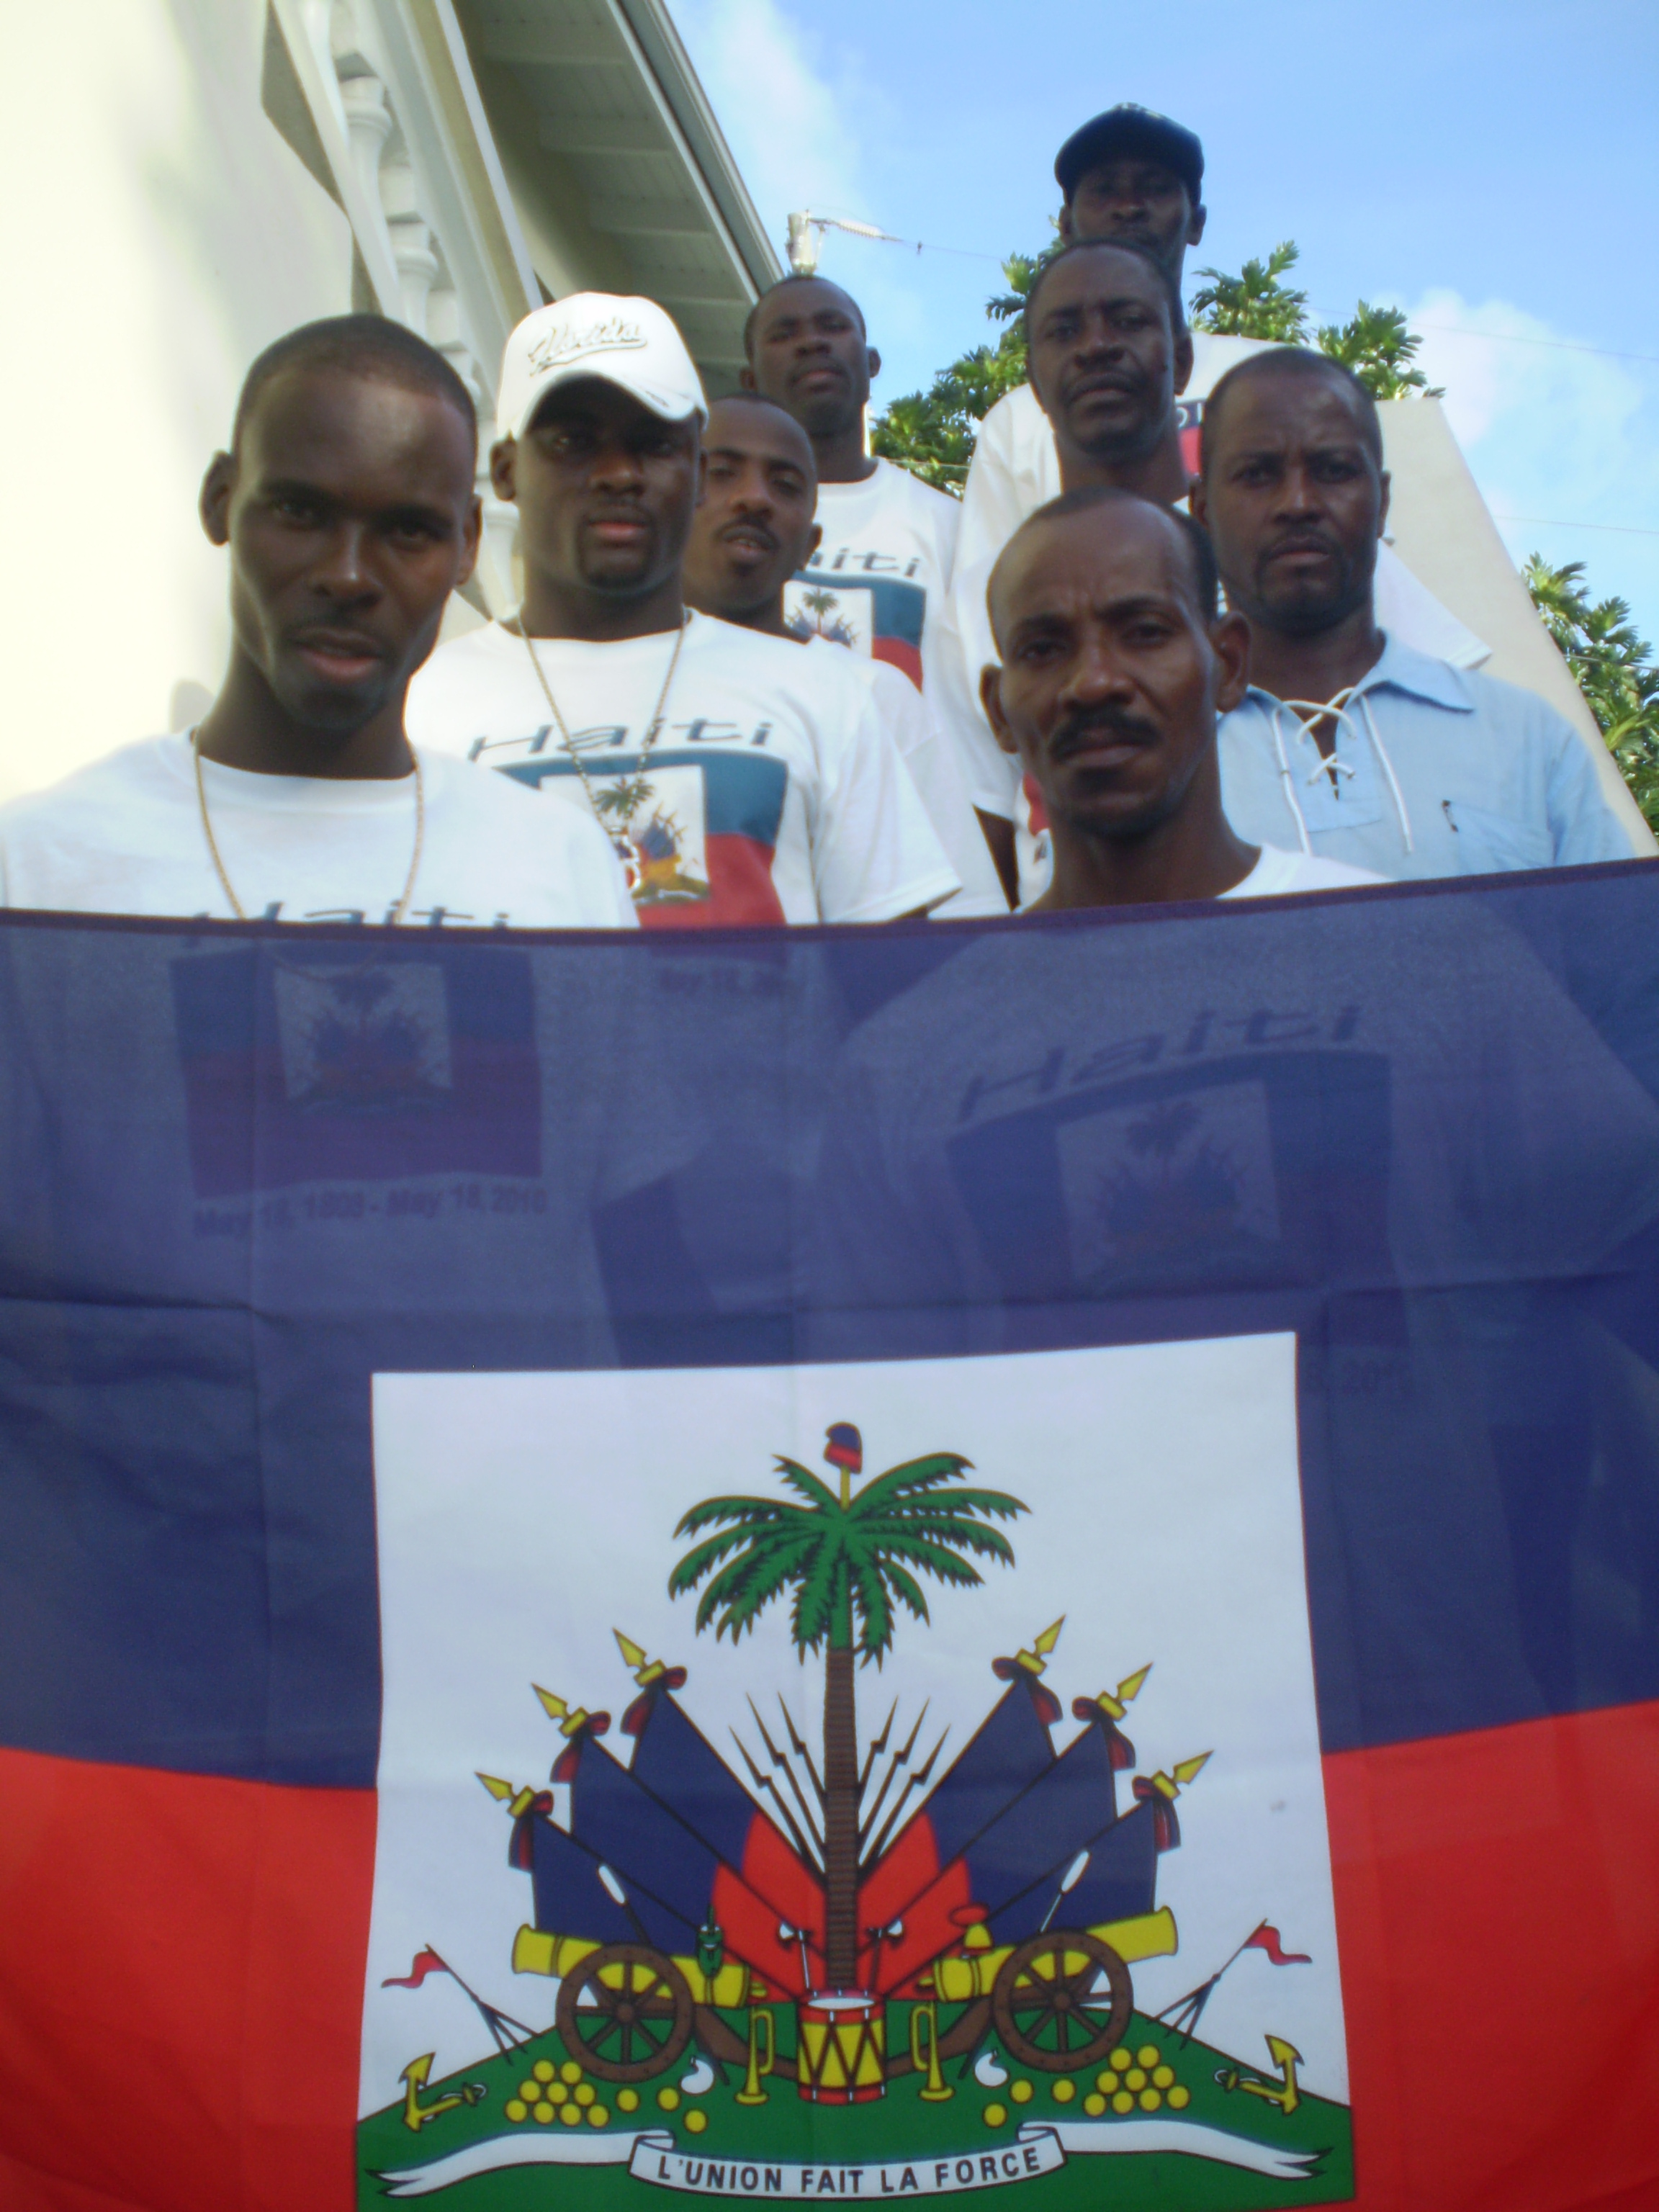 Pictured are proud Haitians Edouard Amjonn, Abraham Booz, Jean Felix, Jean Chrisneau, Olbert Martilus, Fedet Frederic, Jean L. Maitre, Lemony St. Pierre and Ronel Florestal.